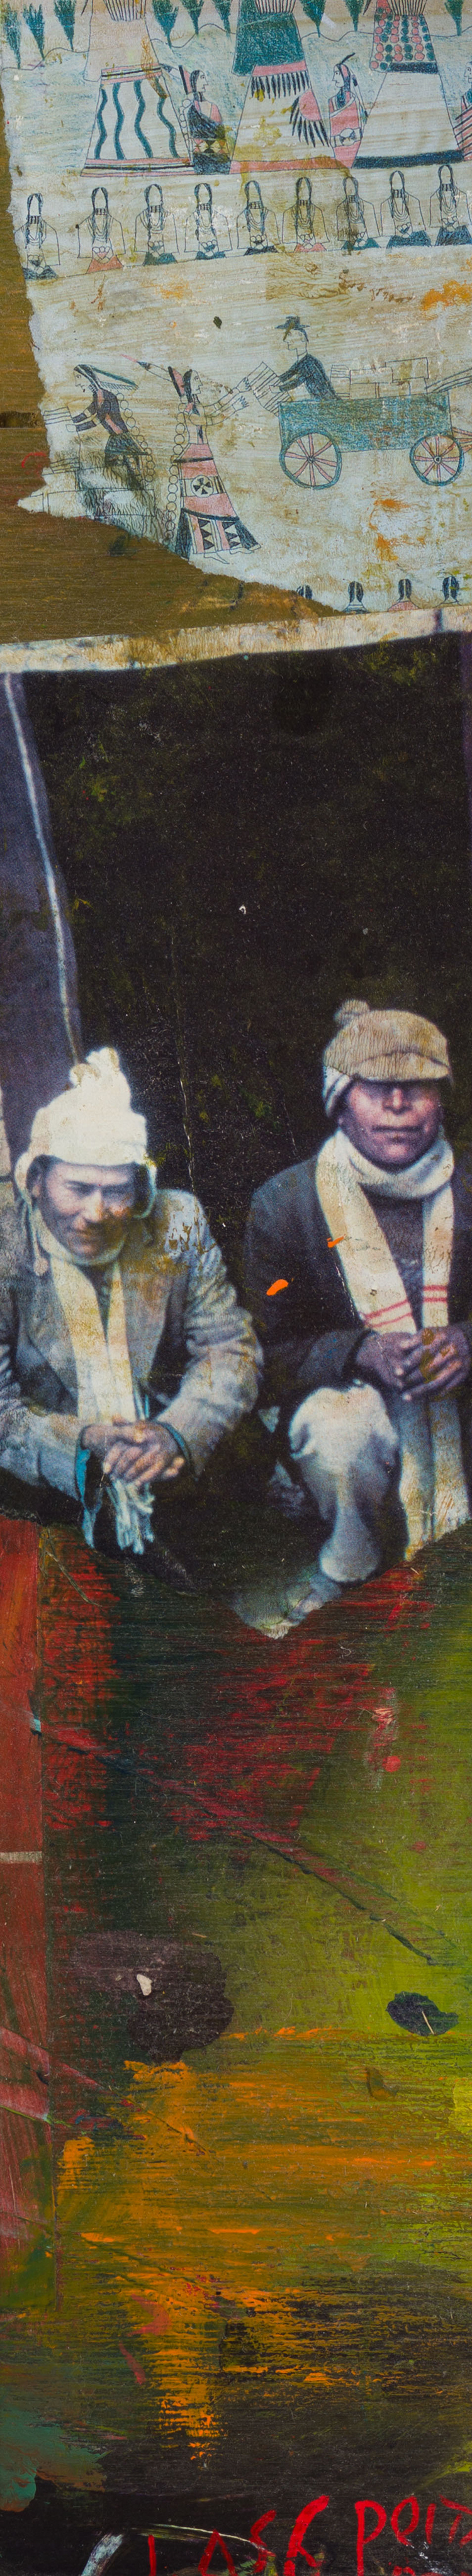 Untitled - Two Native Men par Jane Ash Poitras